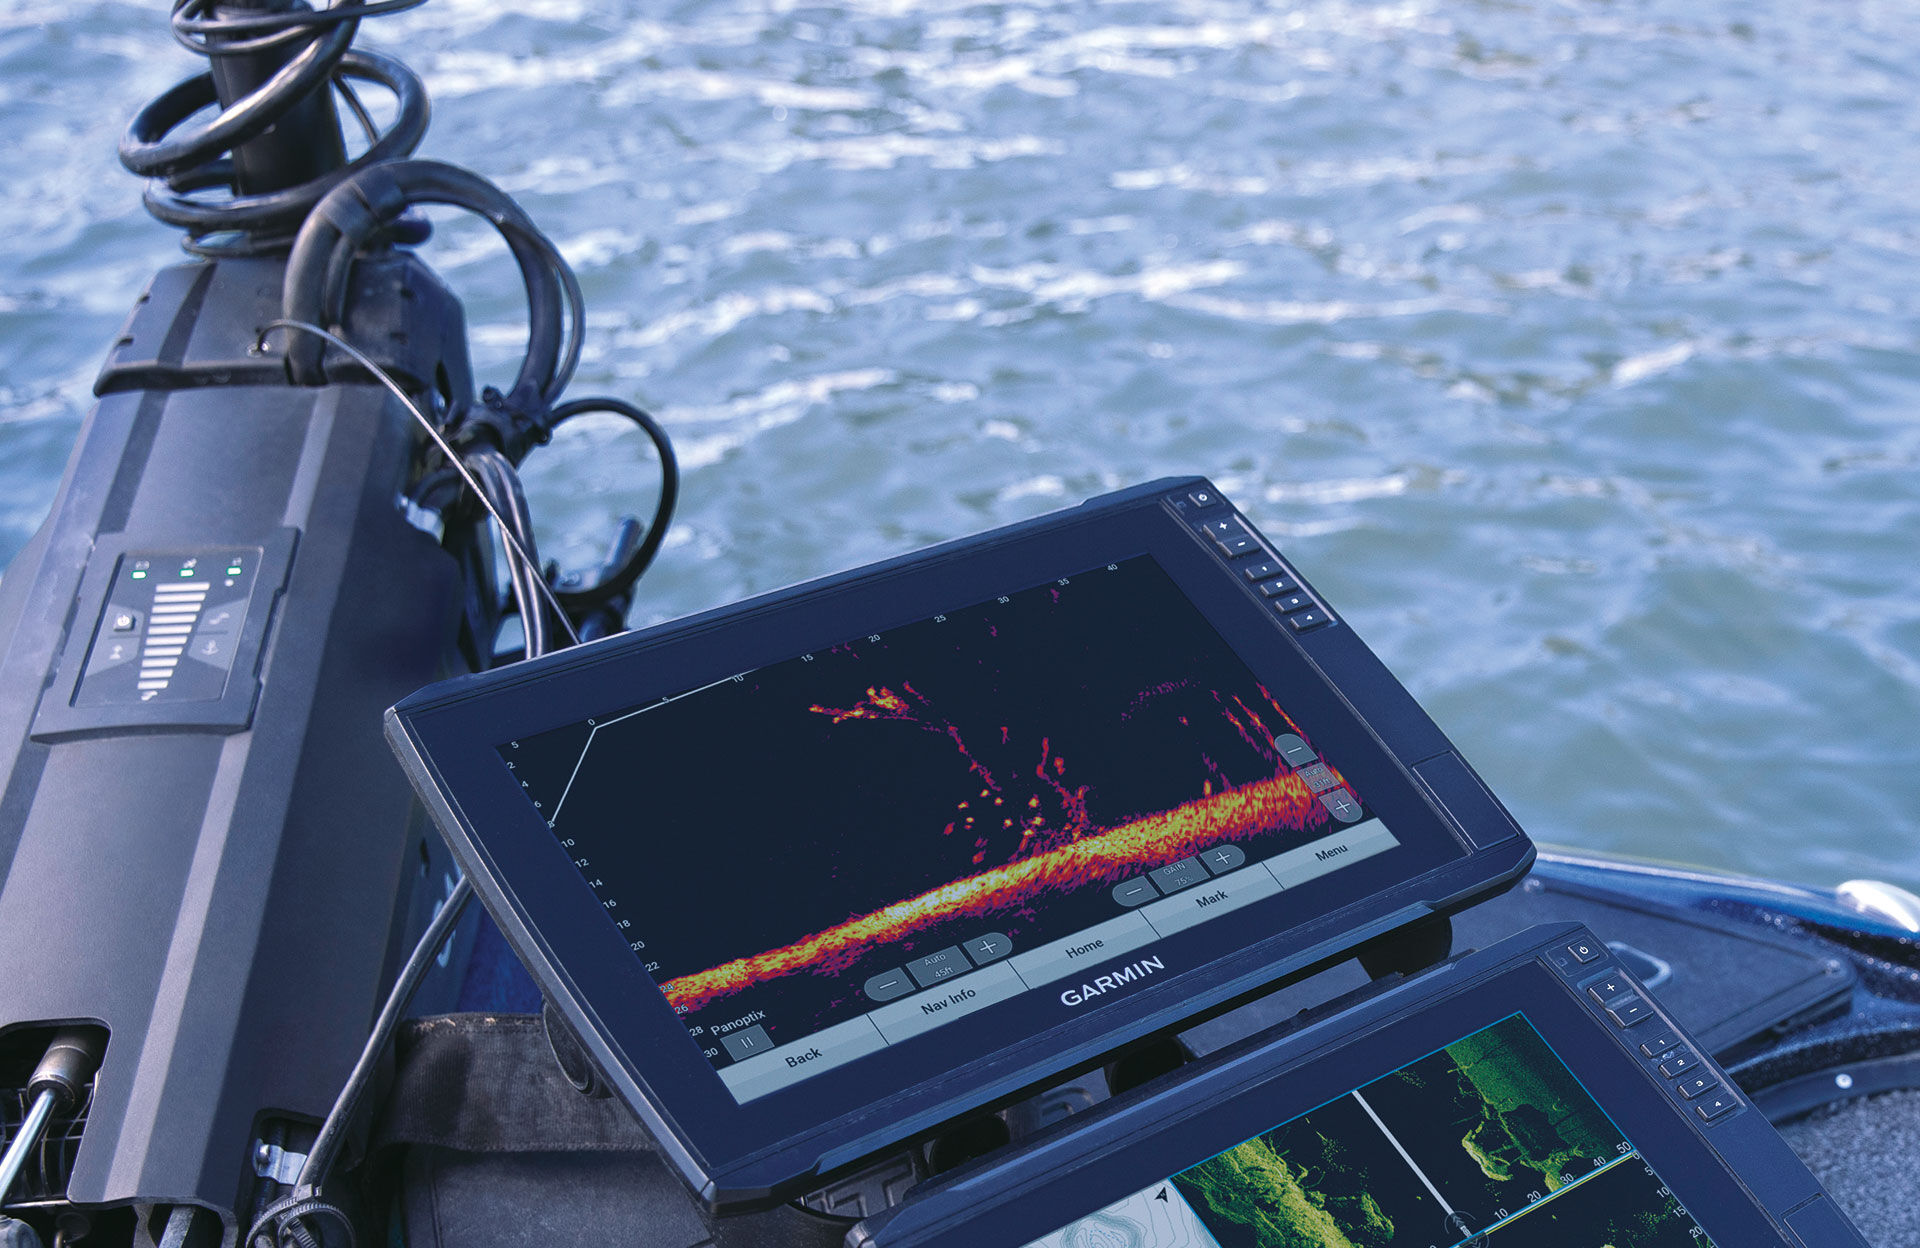  Hightech auf dem Boot: Auf grossen Bildschirmen können die Fischbewegungen dank LiveScope in Echtzeit beobachtet werden.  